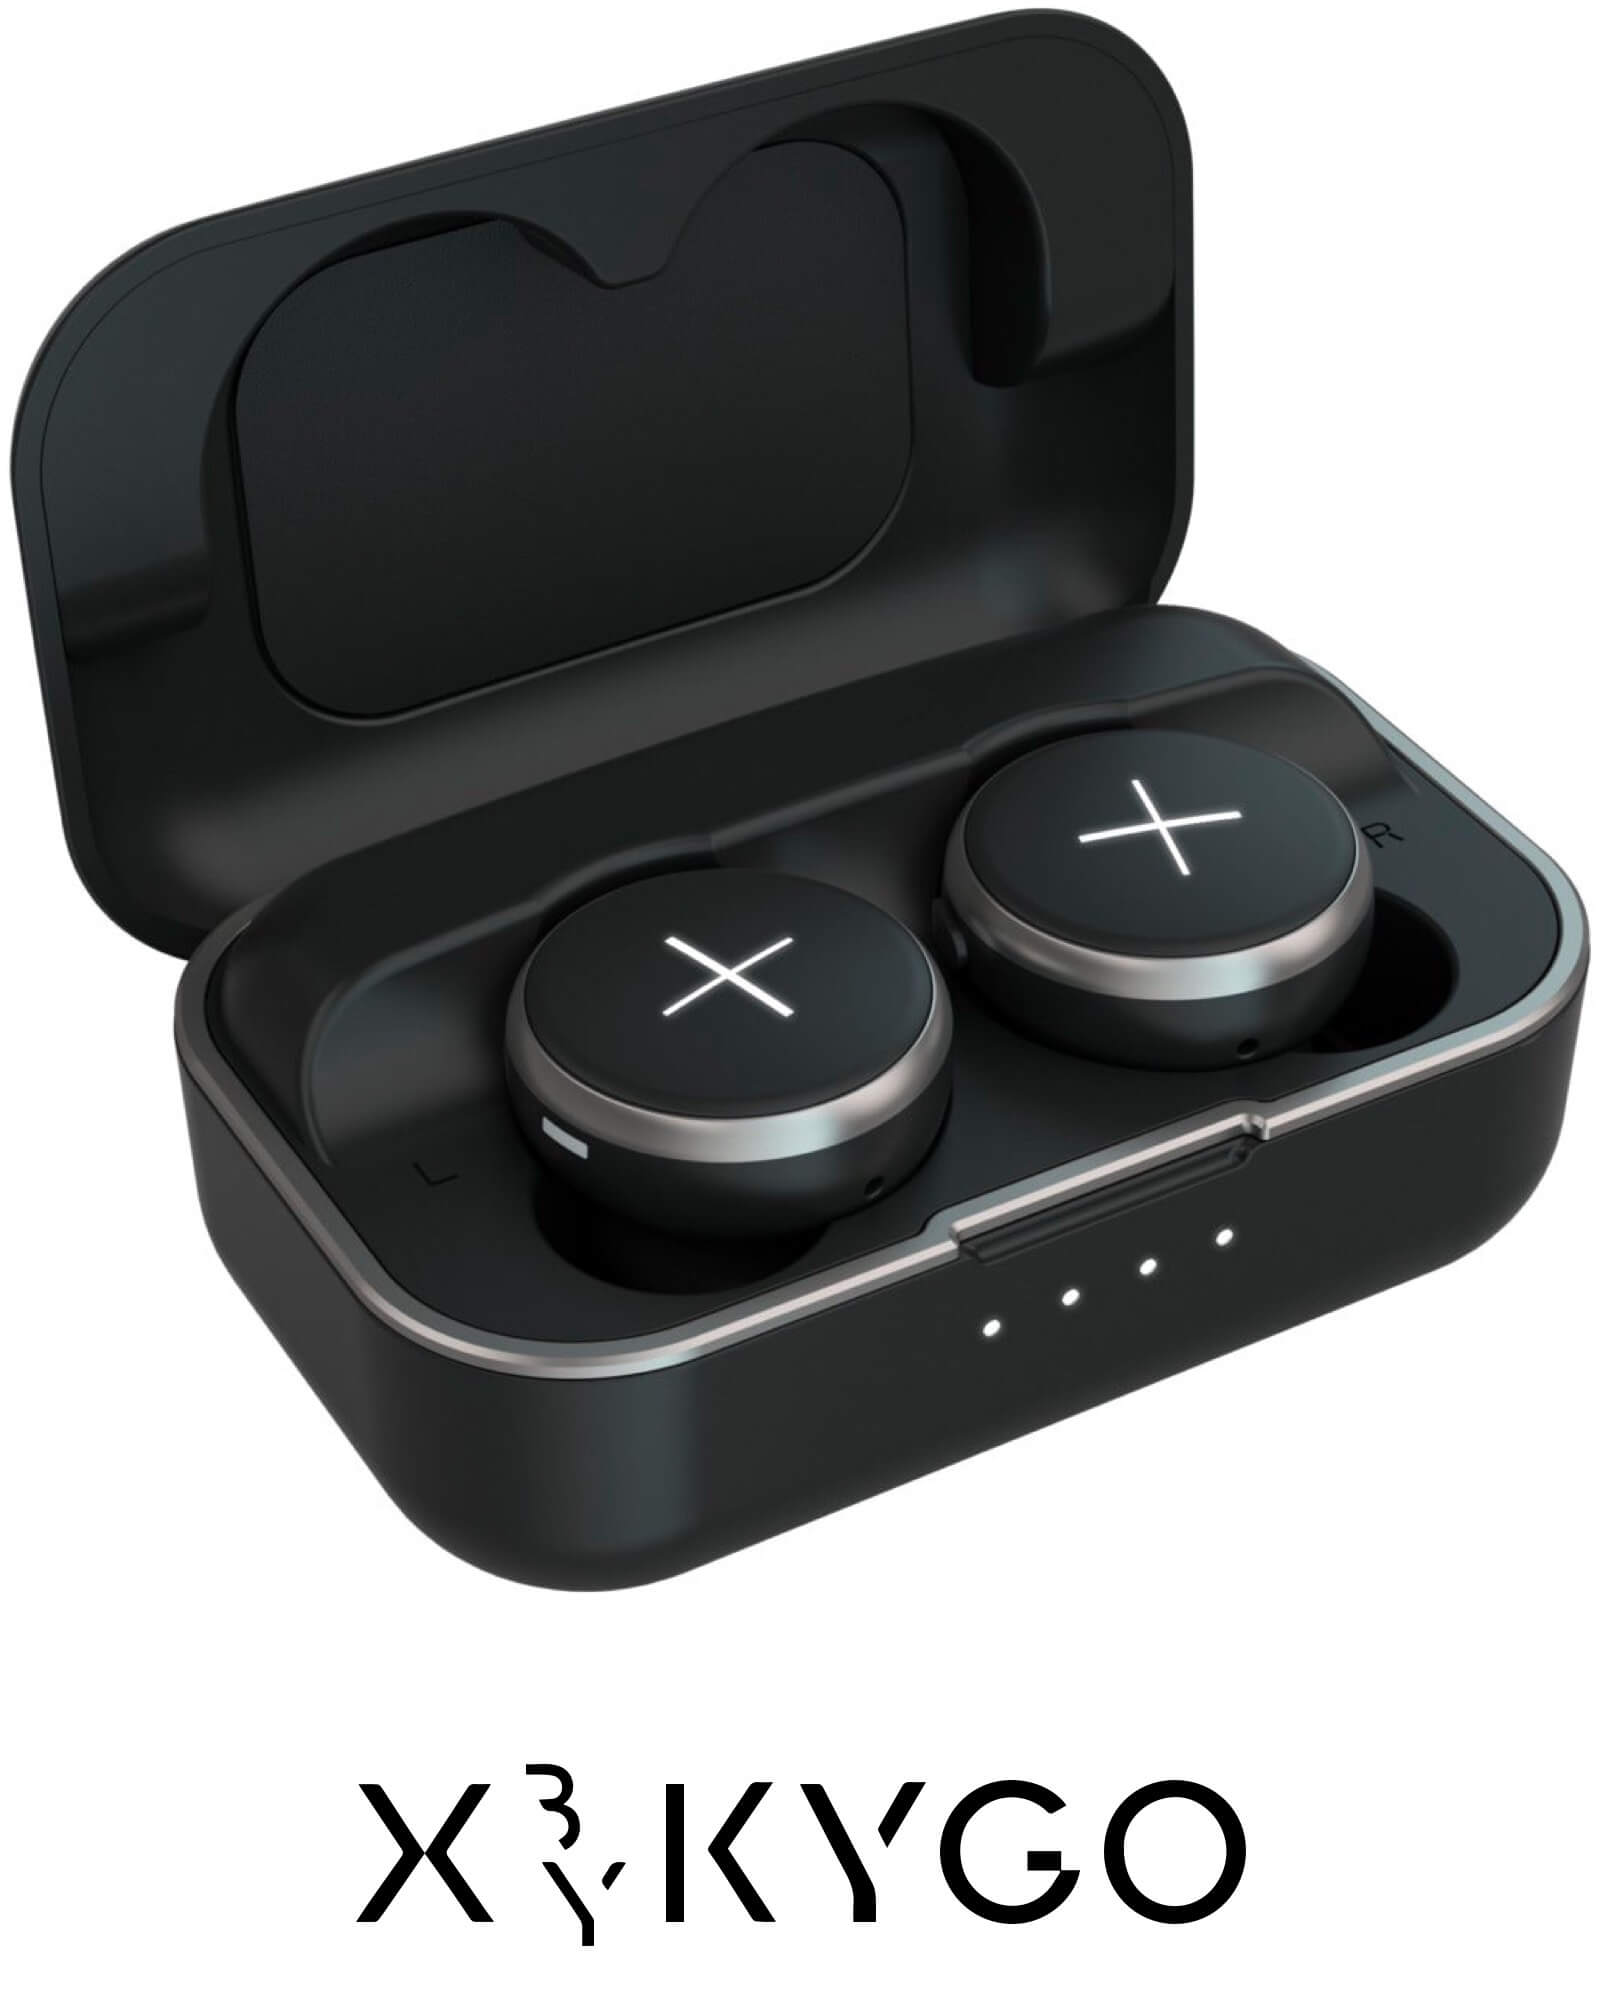 XYKYGO headphones, a Mimi enabled device